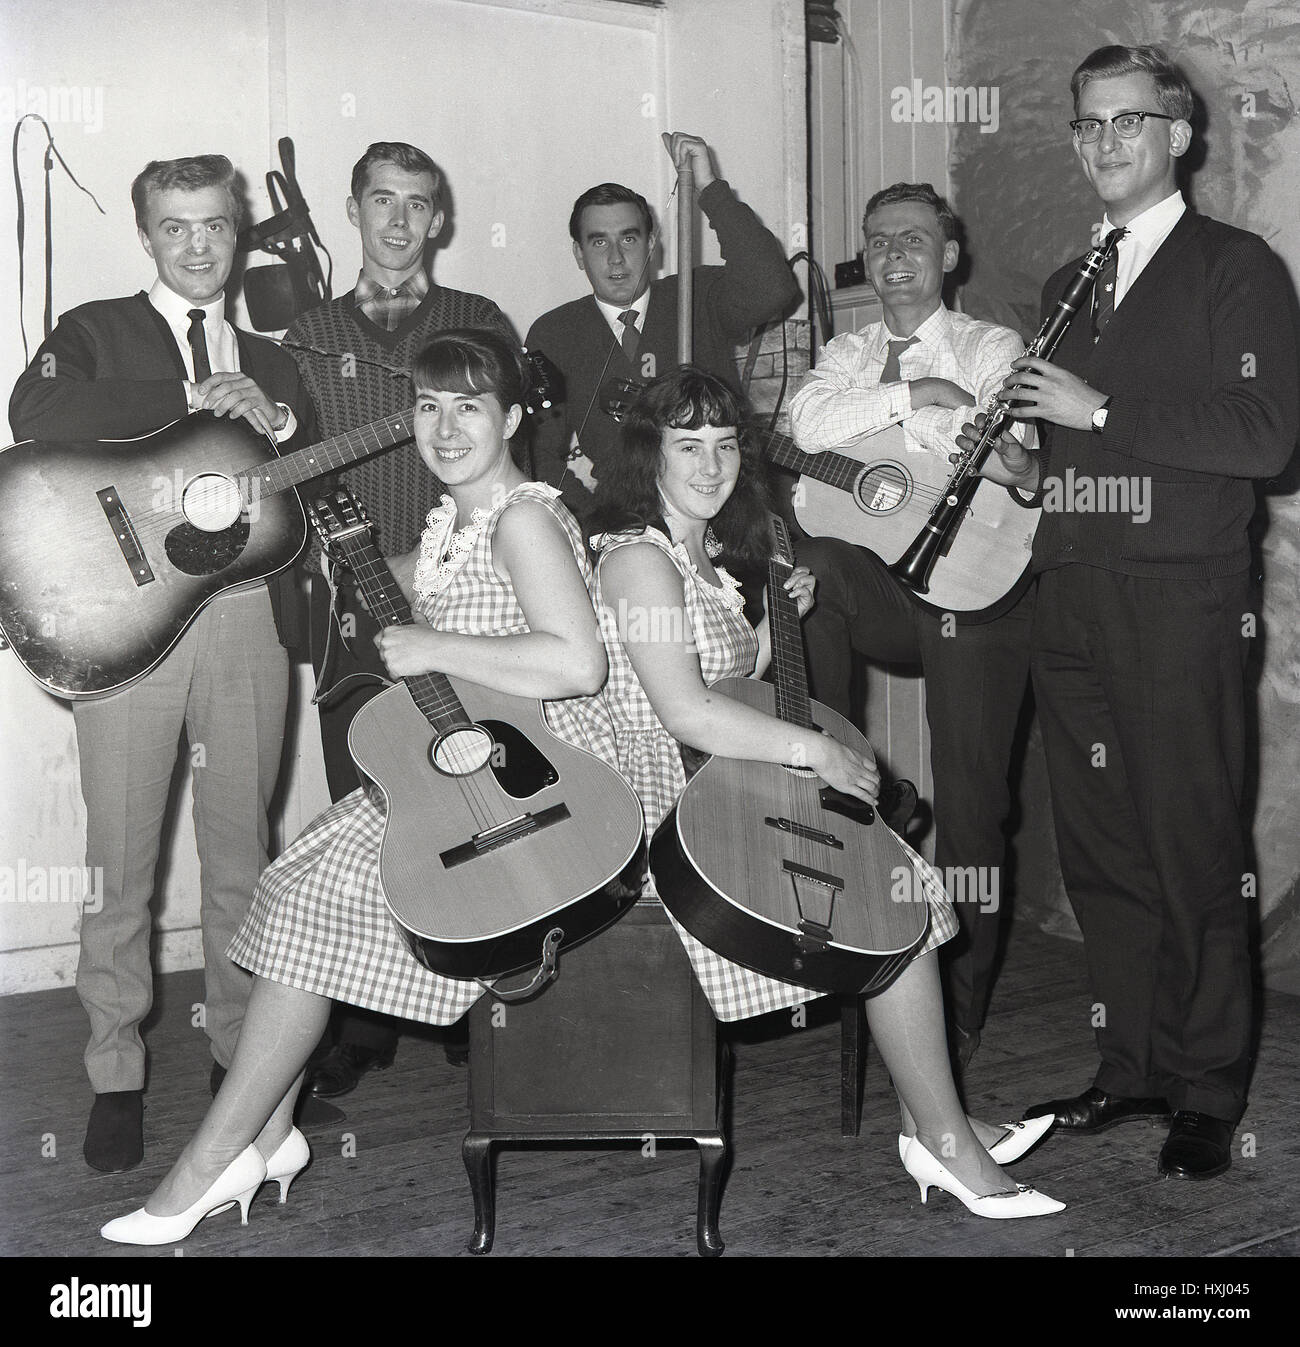 1965, anni sessanta la chitarra o il gruppo folk, Inghilterra, Regno Unito. Foto Stock